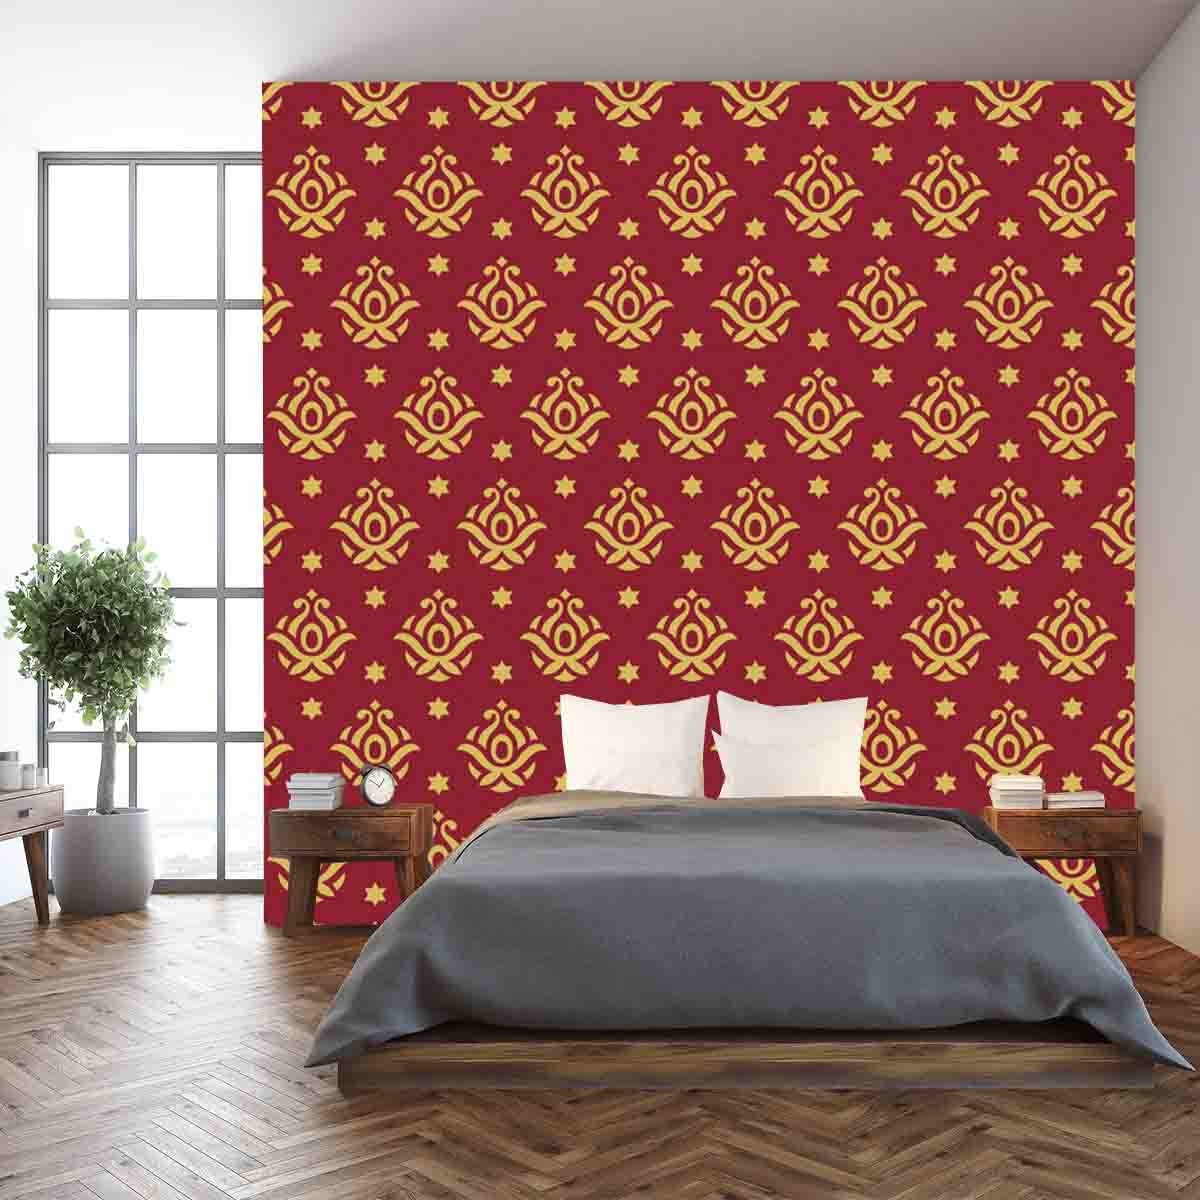 Vintage Burgundy and Gold Design Wallpaper Bedroom Mural